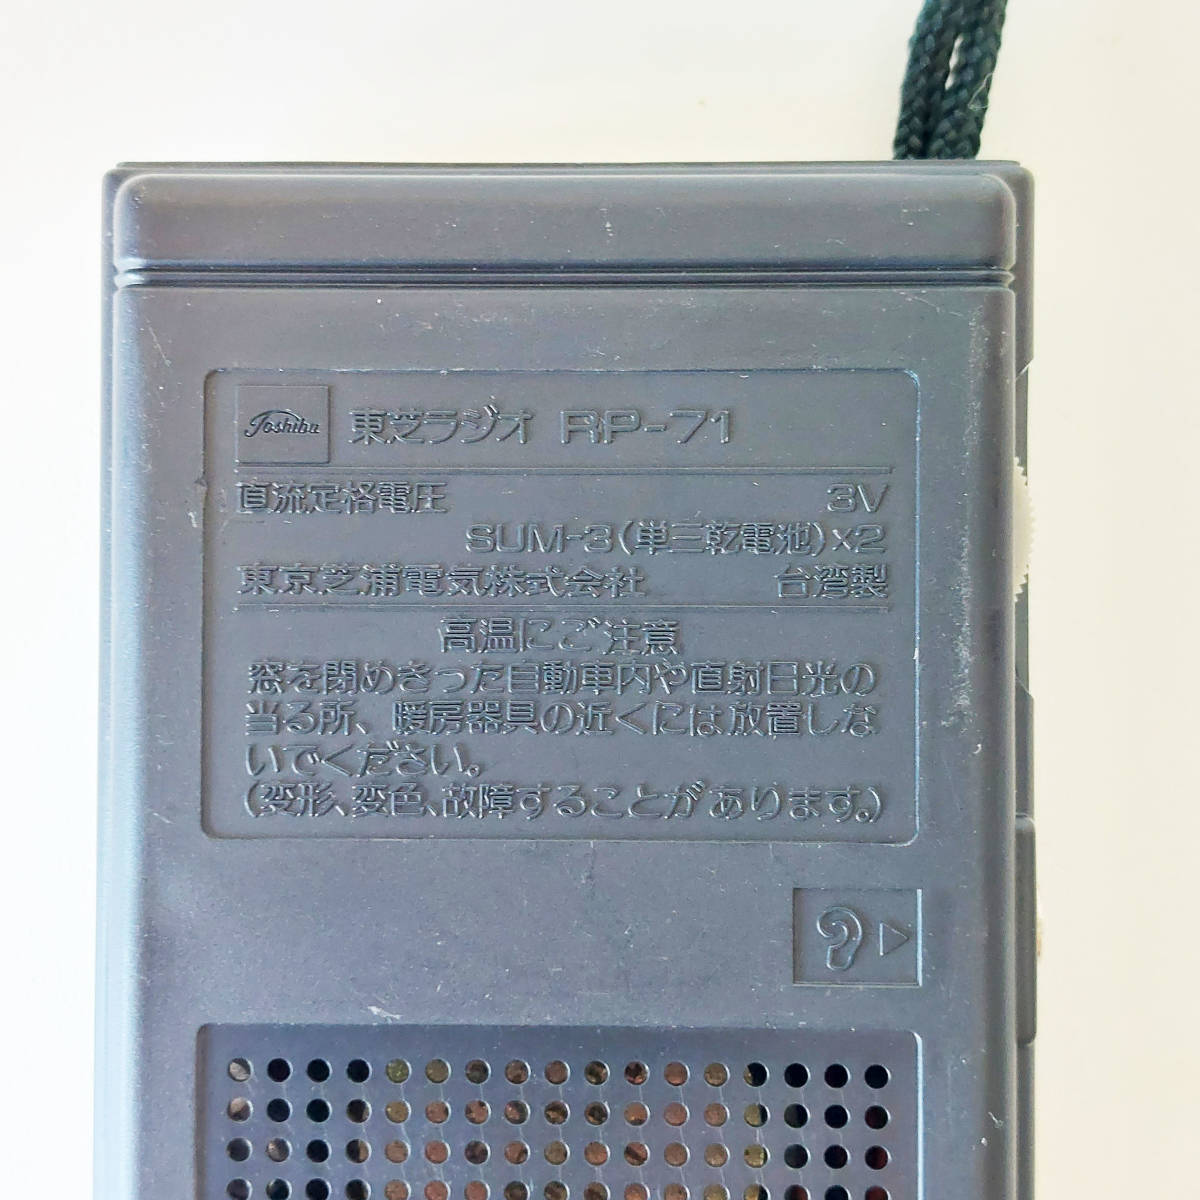 東芝 TOSHIBA RP-71 コンパクトAMラジオ 稀有收藏品 携ラジオ_画像3